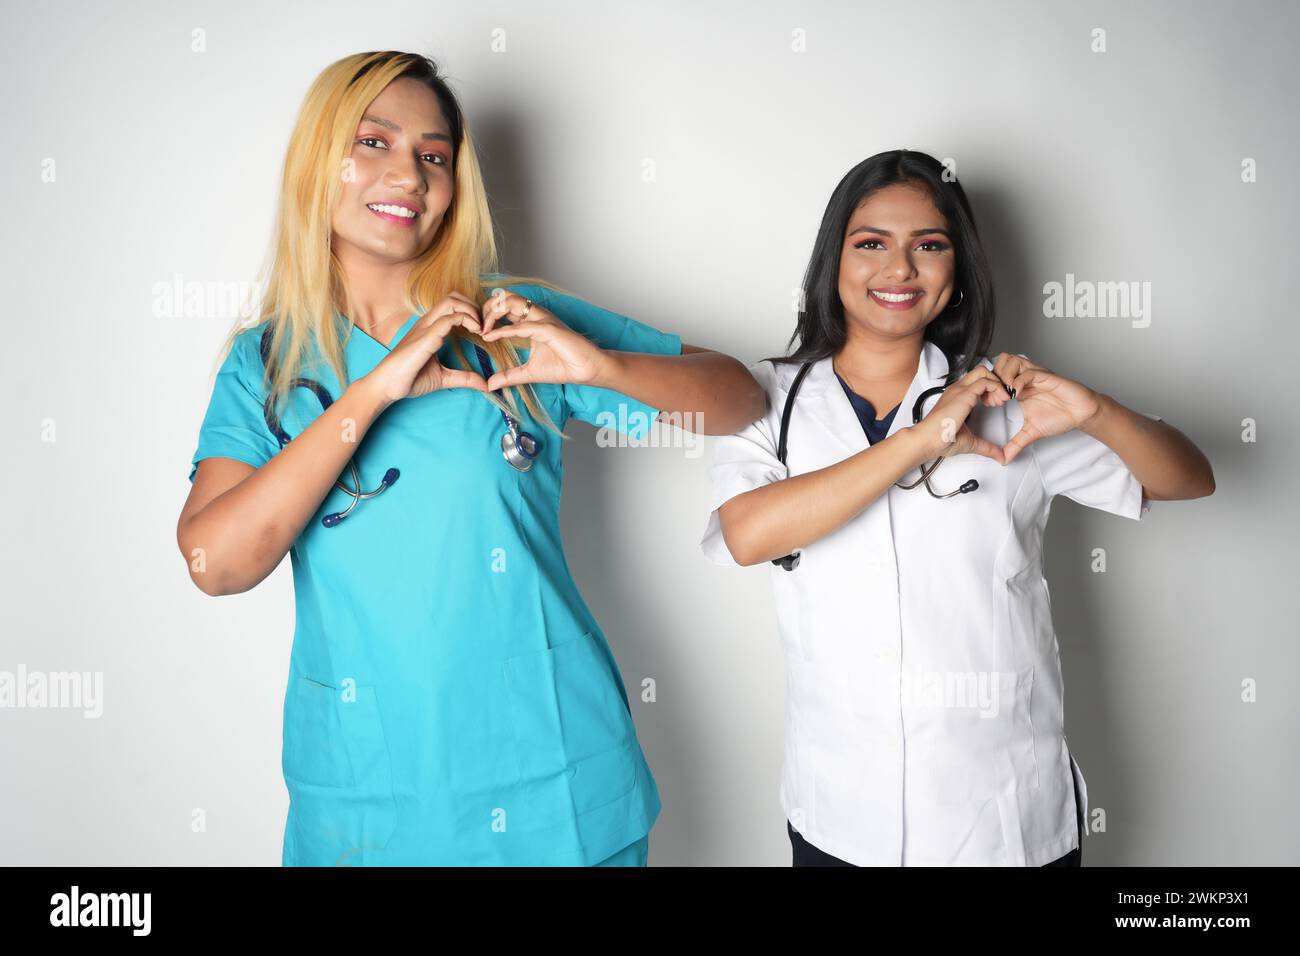 Zwei weibliche Ärzte, die mit ihren Händen eine Herzform bilden Stockfoto